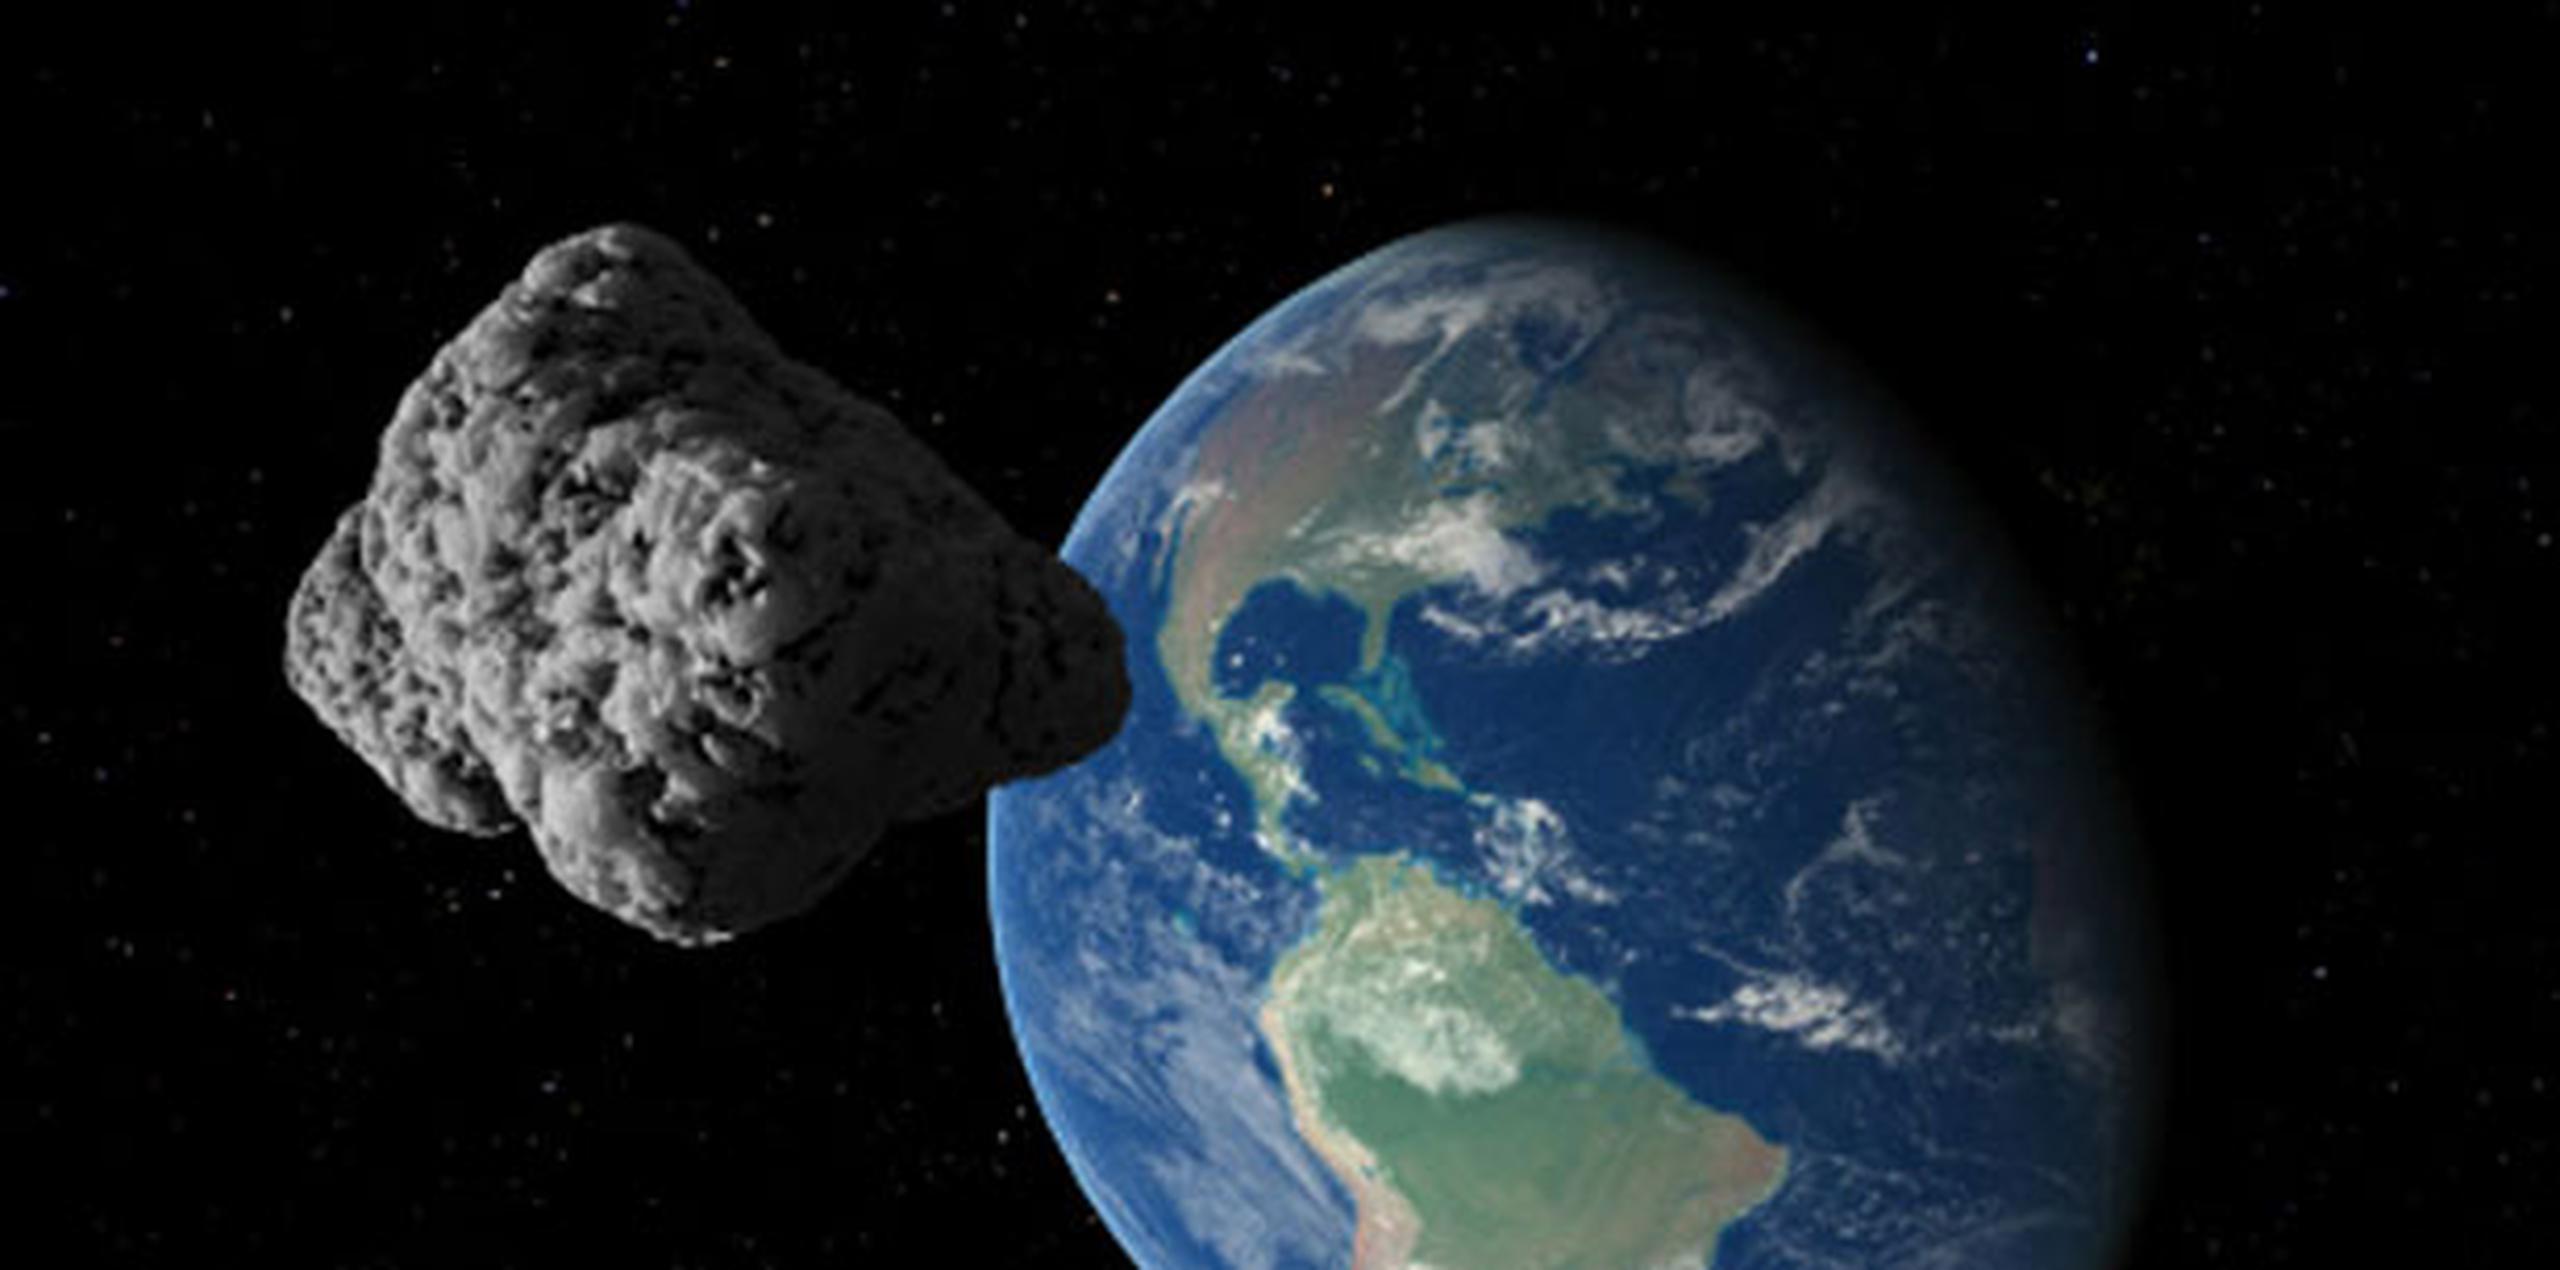 Los investigadores explicaron que la probabilidad de que un asteroide de tamaño kilométrico tenga consecuencias devastadoras tras impactar con la Tierra es estadísticamente pequeña, pero sí es más frecuente que alcancen la atmósfera terrestre objetos de pocas decenas de metros que se descubren continuamente. (Archivo)